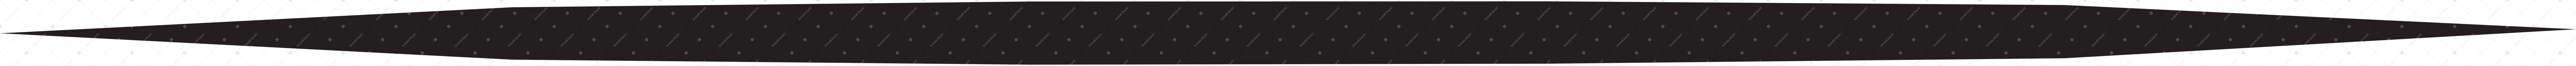 черная тень для фона в PNG, SVG